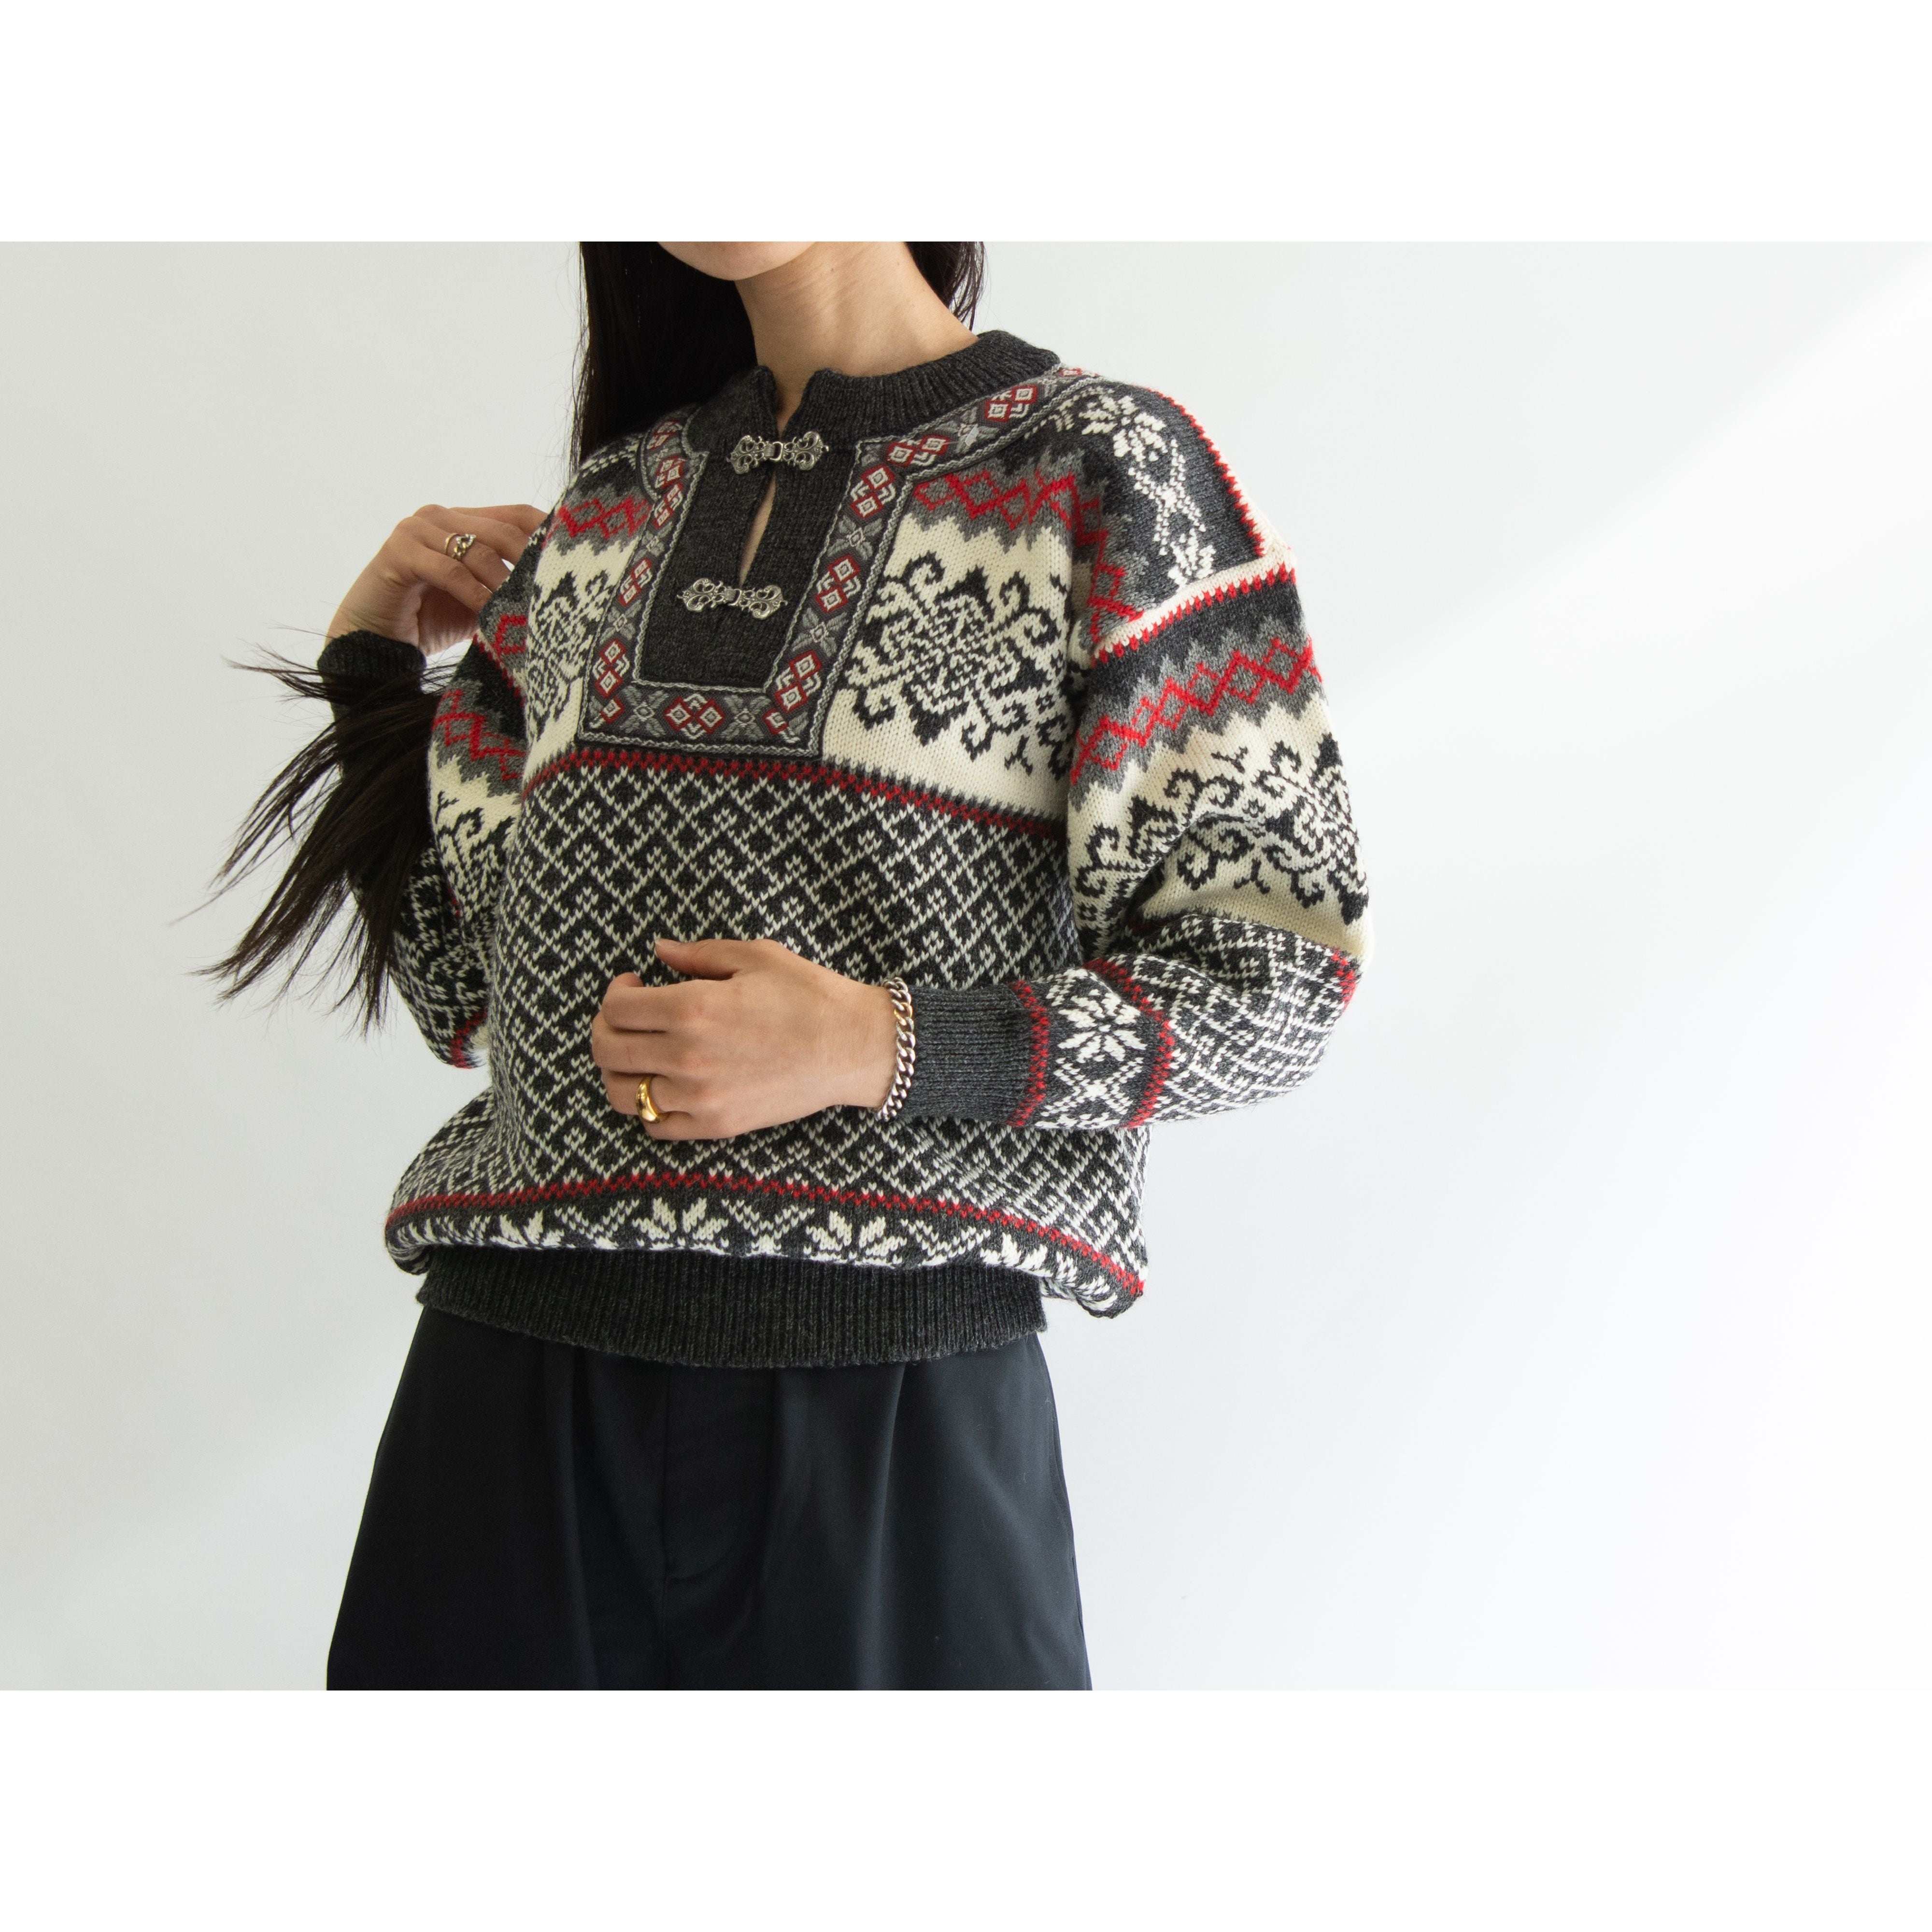 Nordstrikk Dead stock】Made in Norway 100% Wool Nordic Sweater 